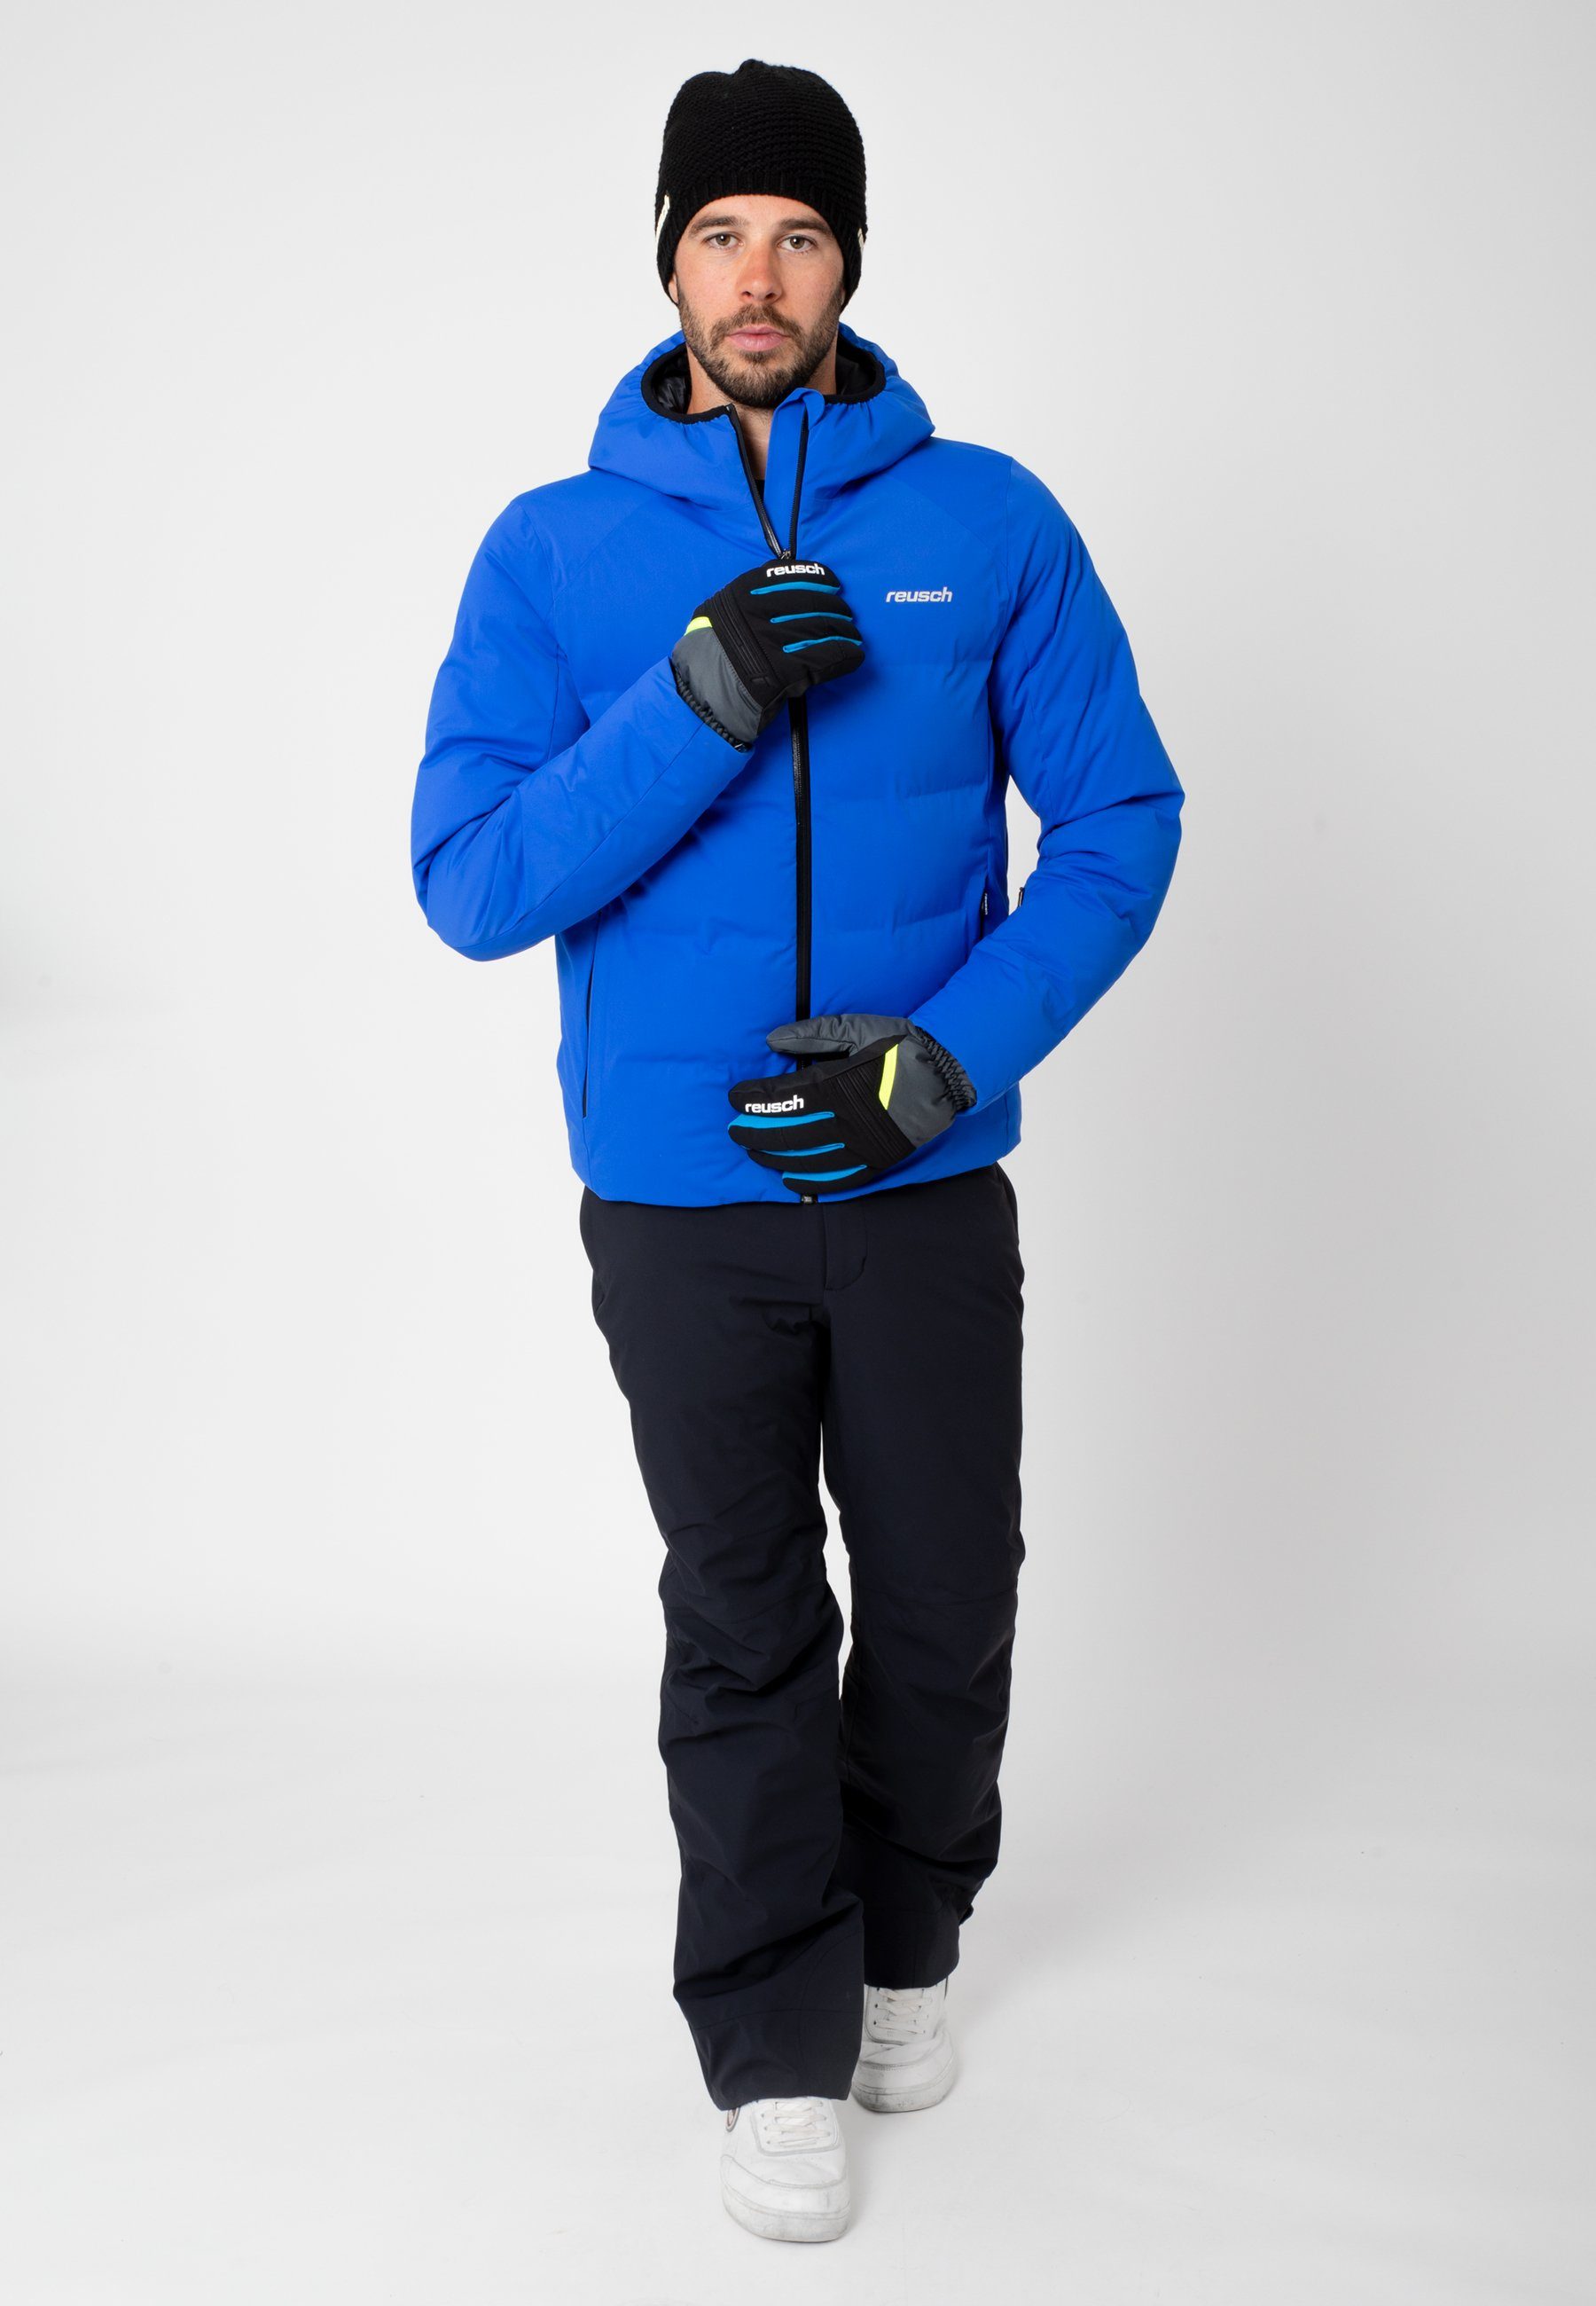 Reusch Skihandschuhe Baldo R-TEX XT warm und wasserdicht grau-gelb